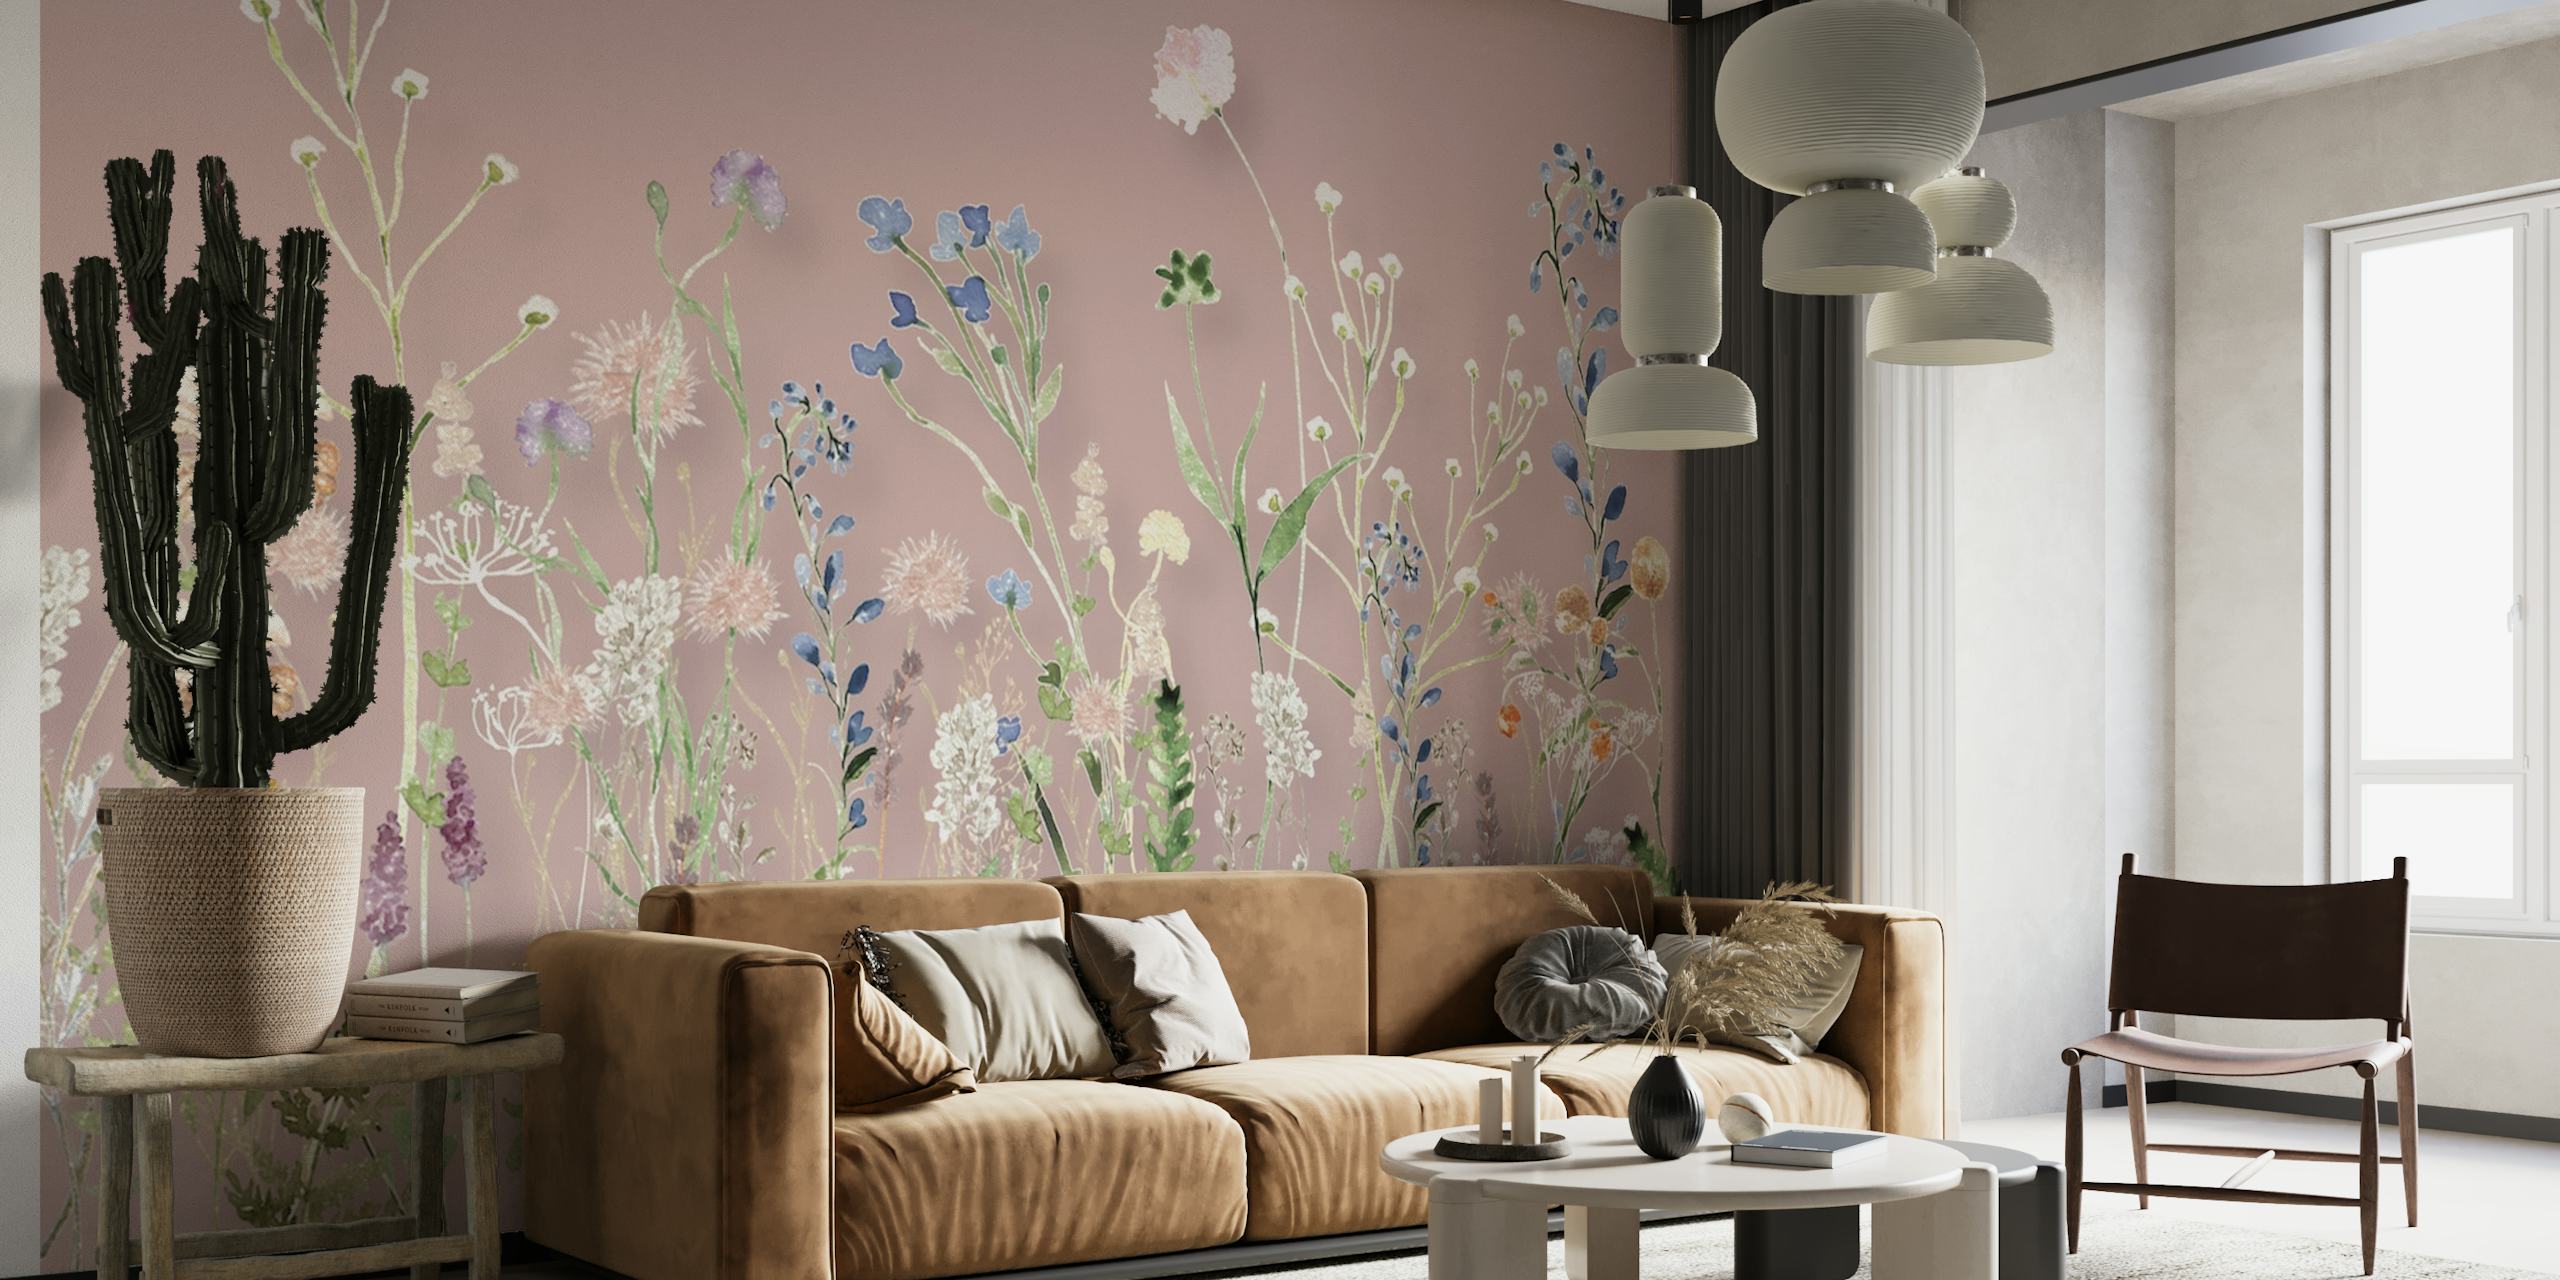 Un motif apaisant de prairie de fleurs sauvages avec un fond rose poudré pour une fresque murale.